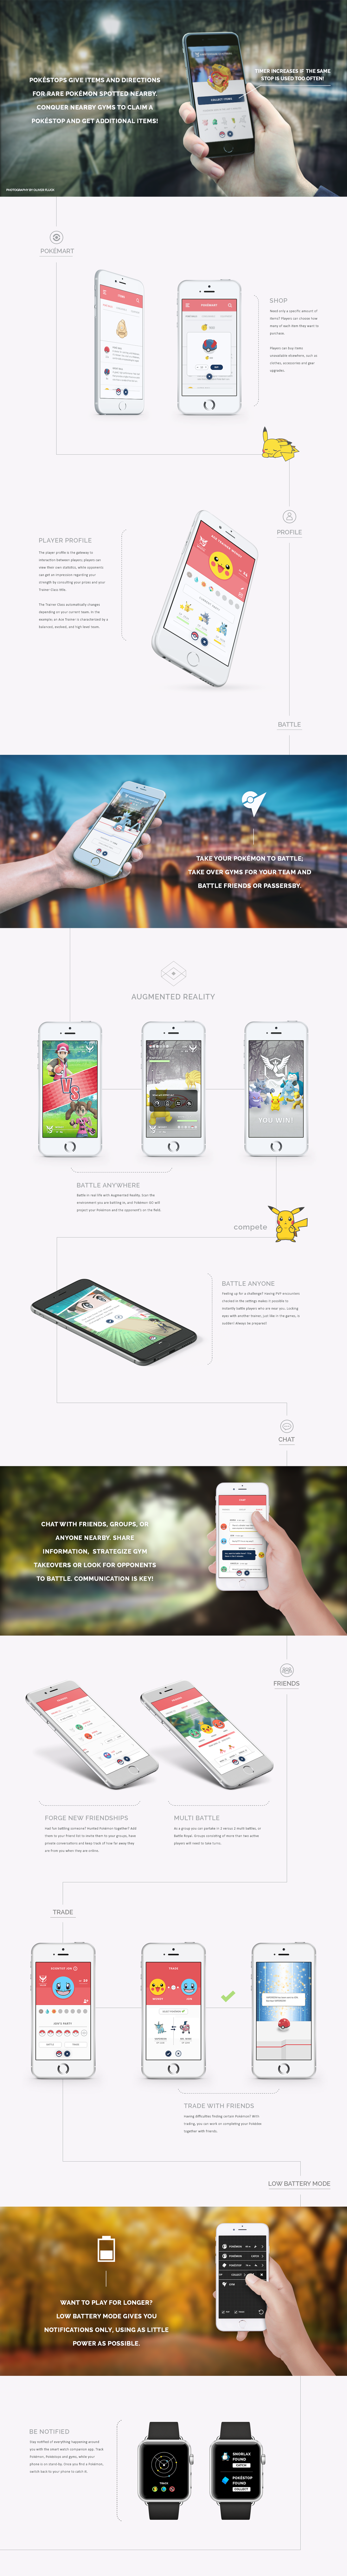 Pokemon pokemon go app UI ux mobile PokemonGO